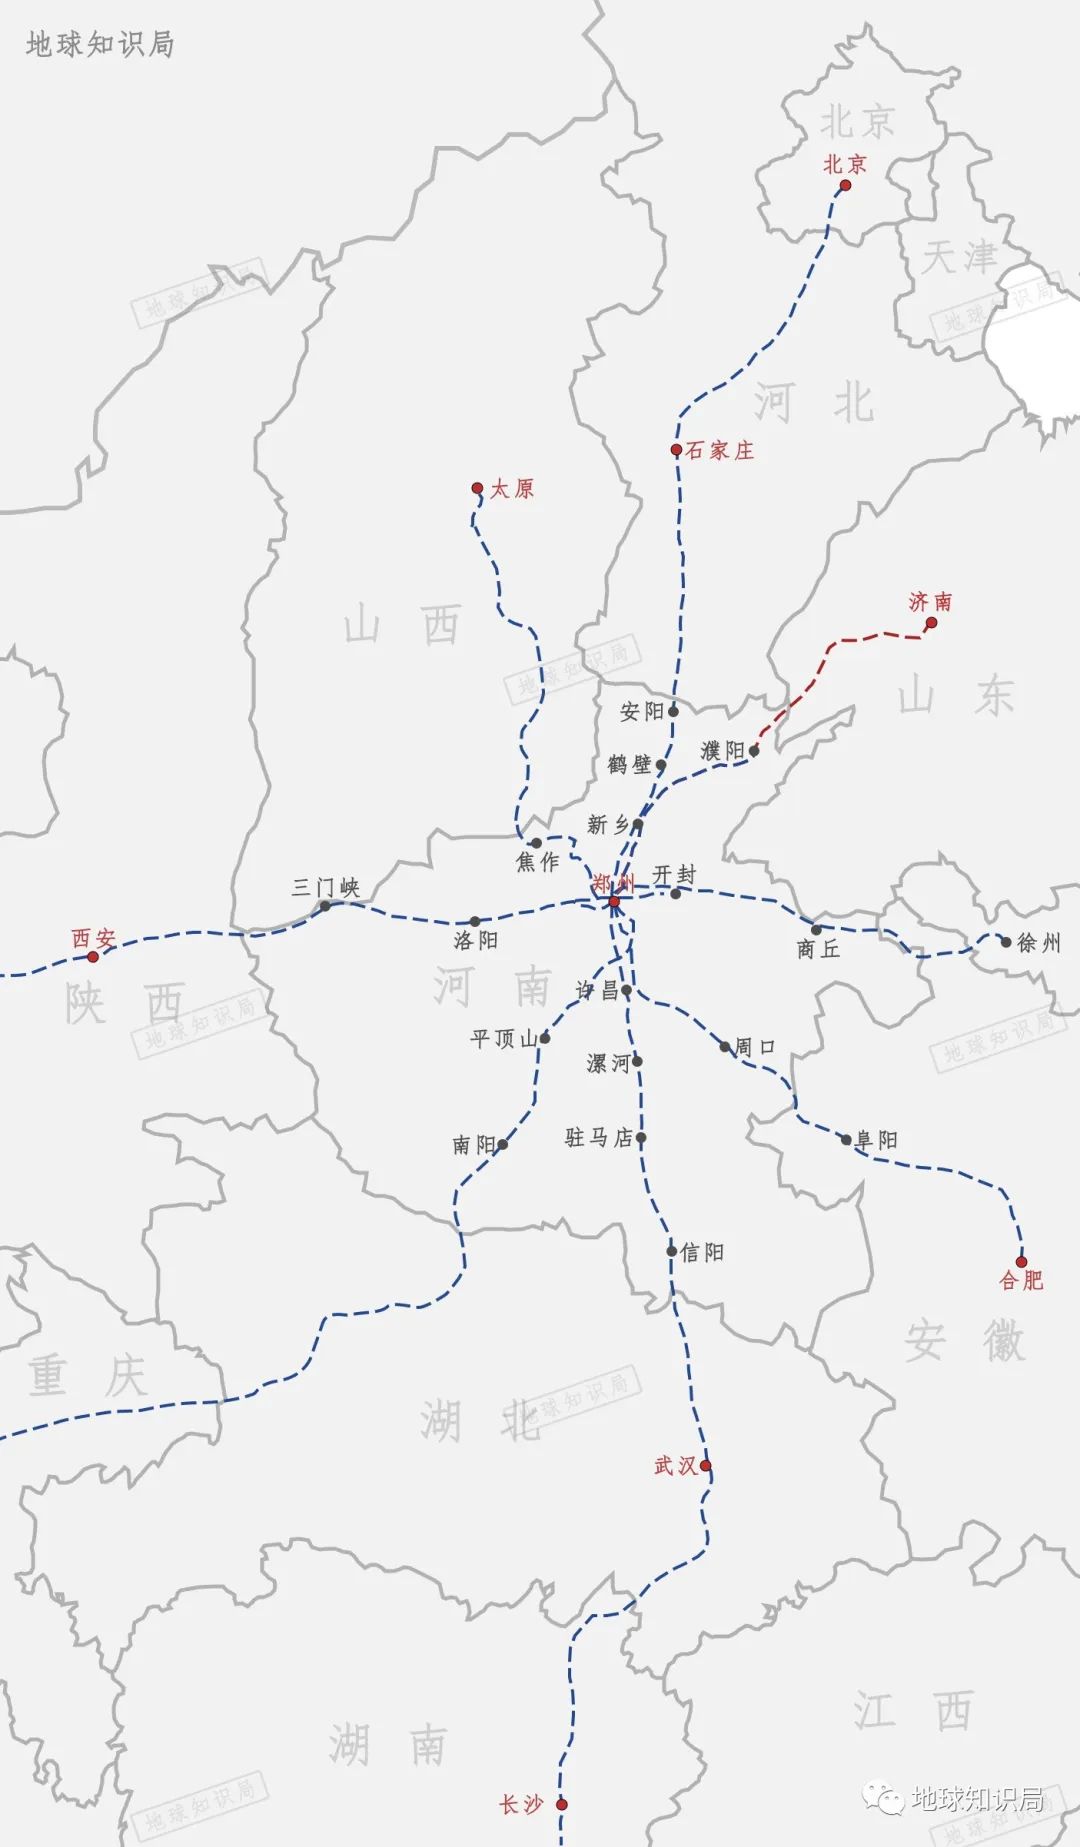 河南省实现市市通高铁,这也是全国首个米字形快速铁路网